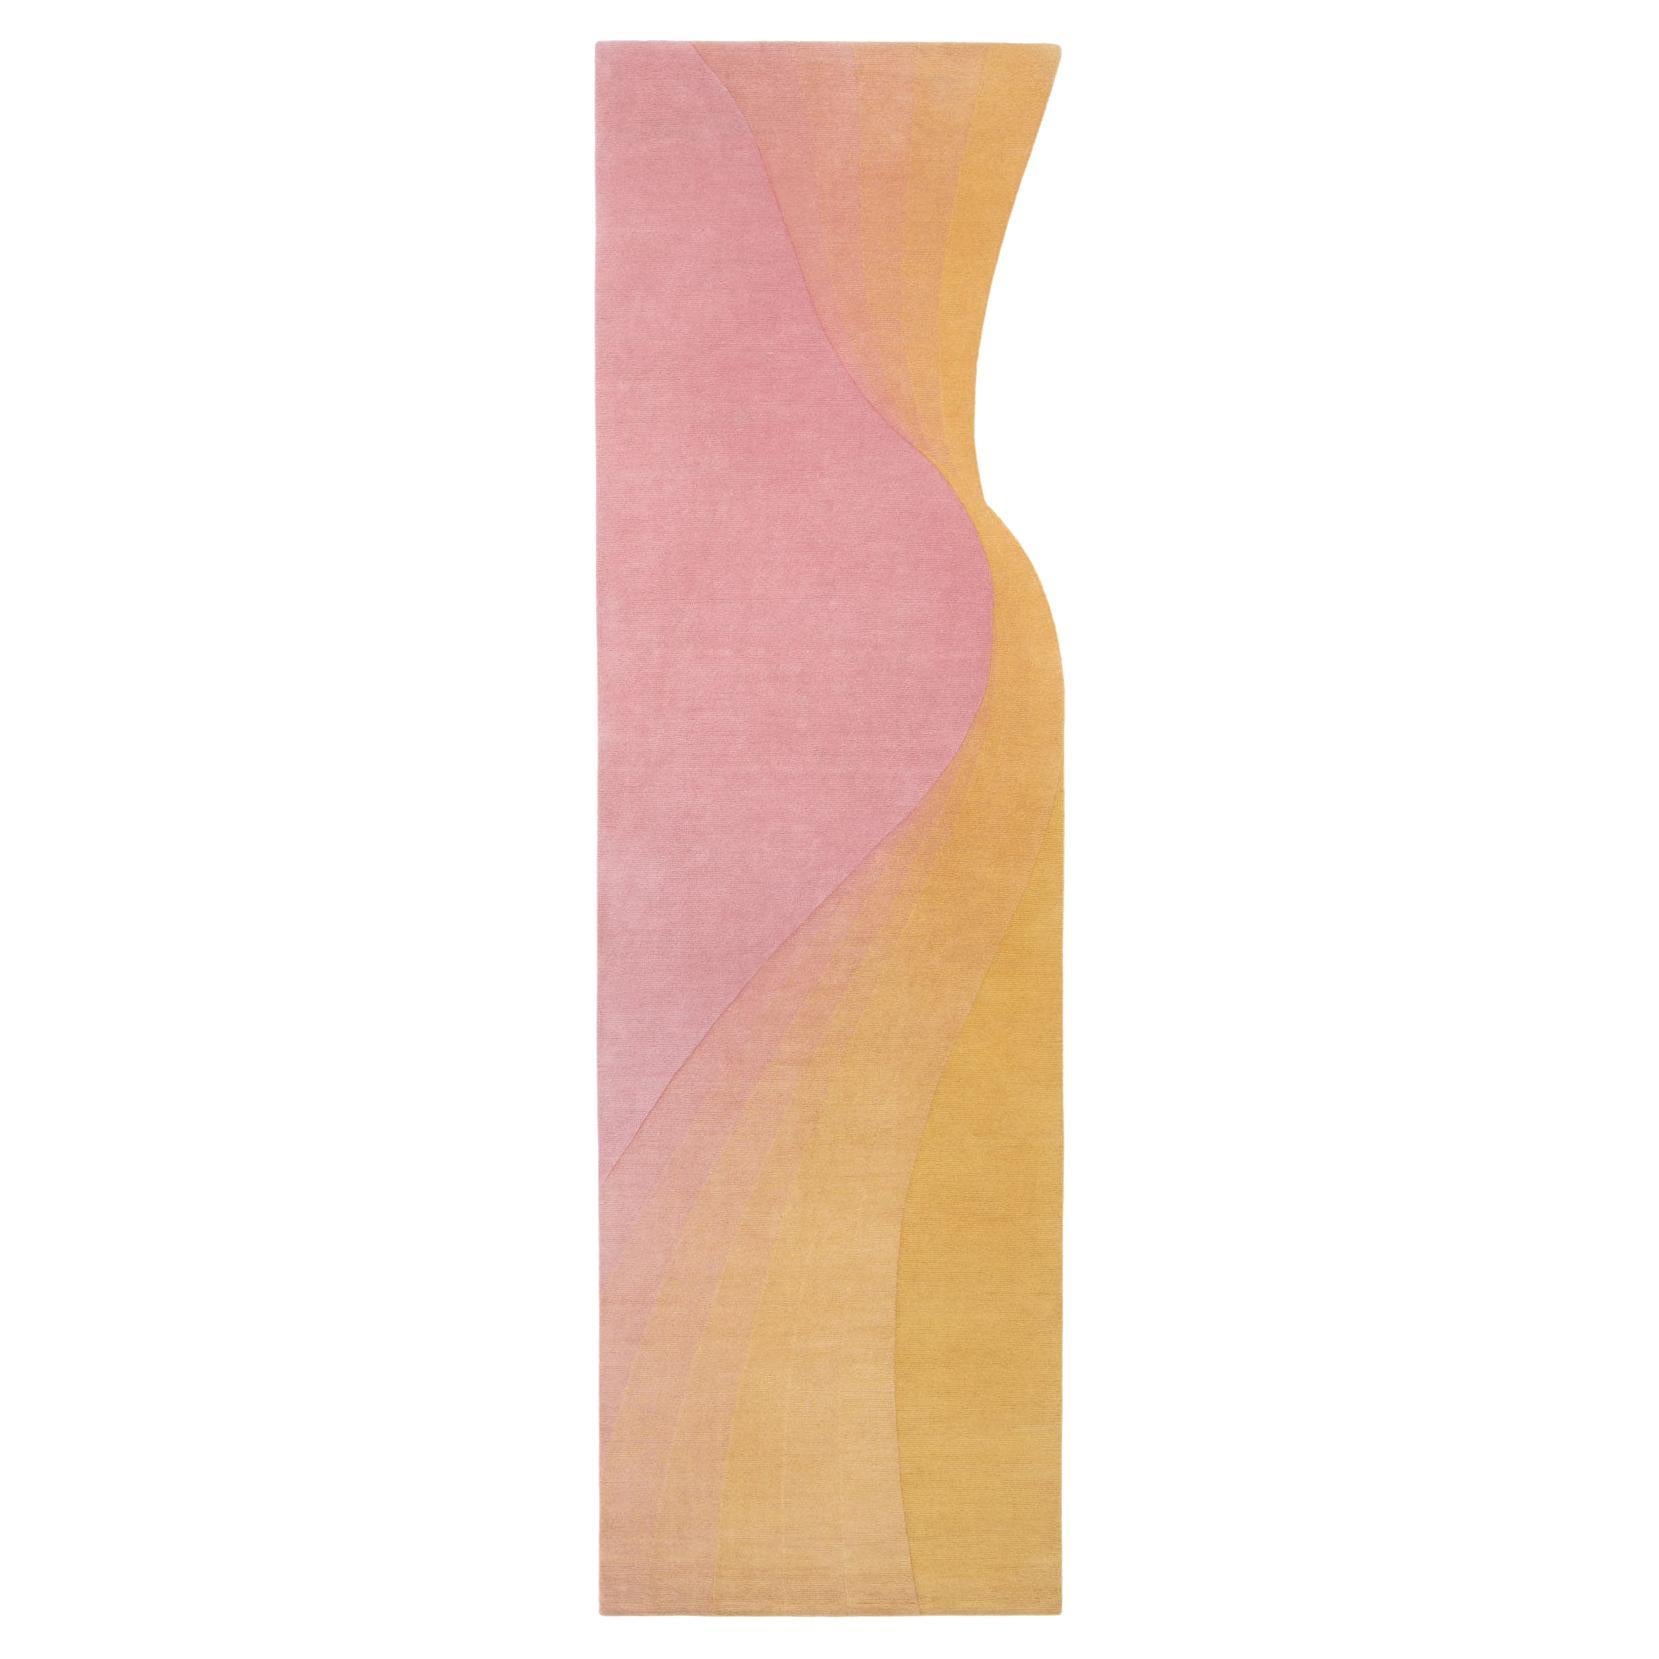 Collection de cc-tapis - Tidal  Tapis Wave Yellow Pink par Germans Ermičs en vente